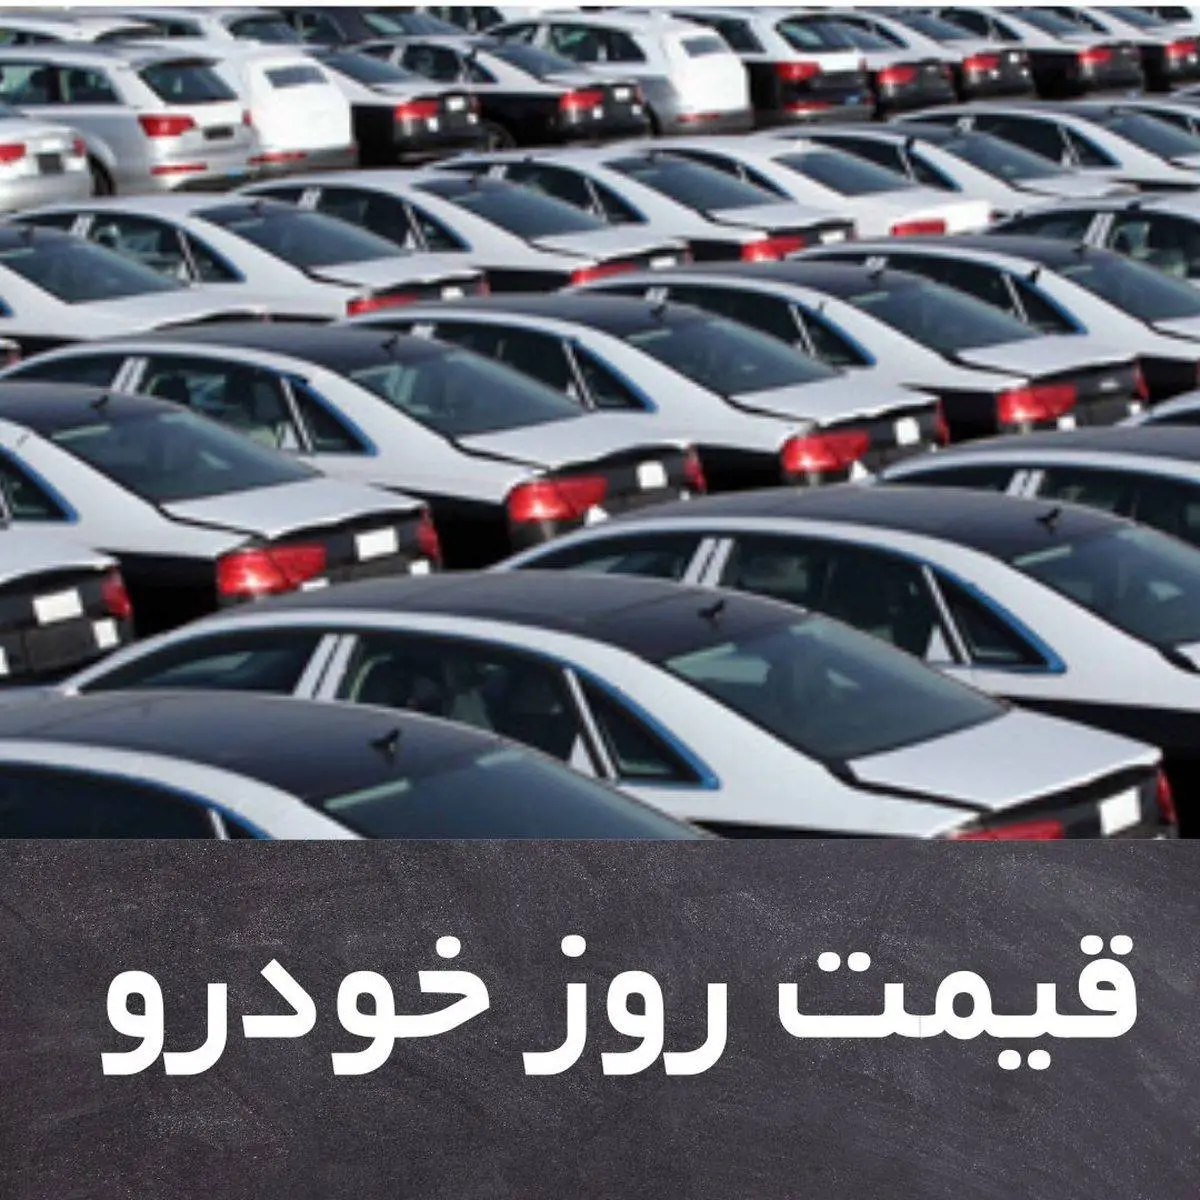 قیمت روز خودرو دوشنبه 20 بهمن + جدول